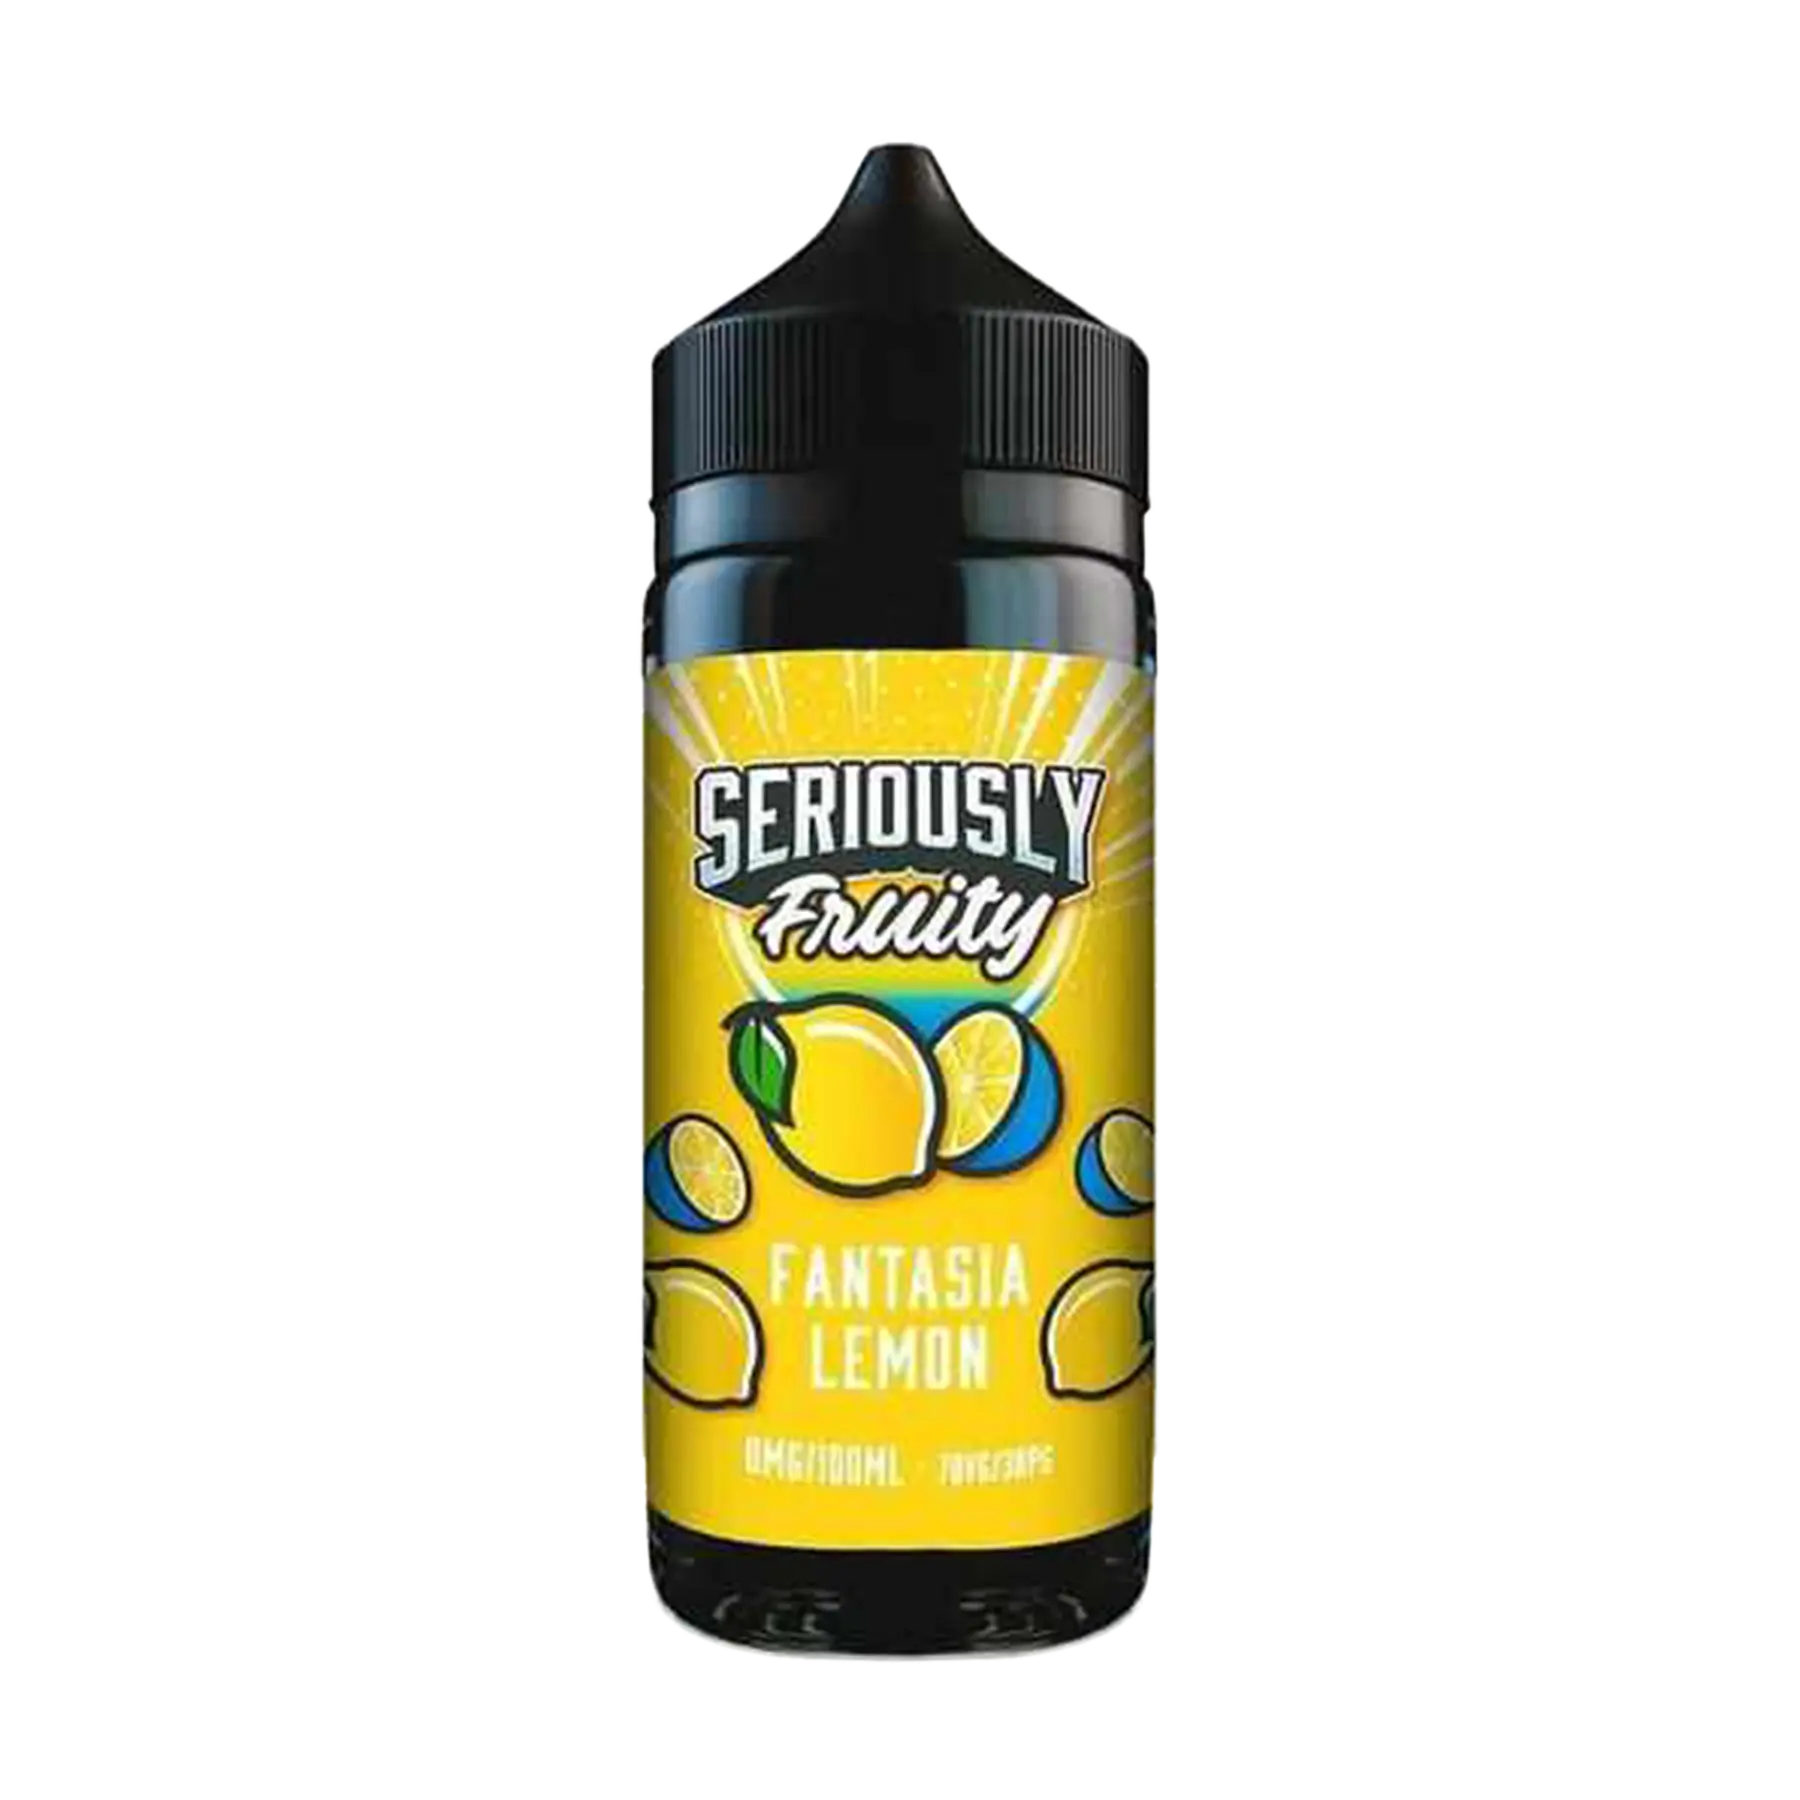 Doozy Seriously Fruity Fantasia Lemon 100ml E Liquid Shortfill